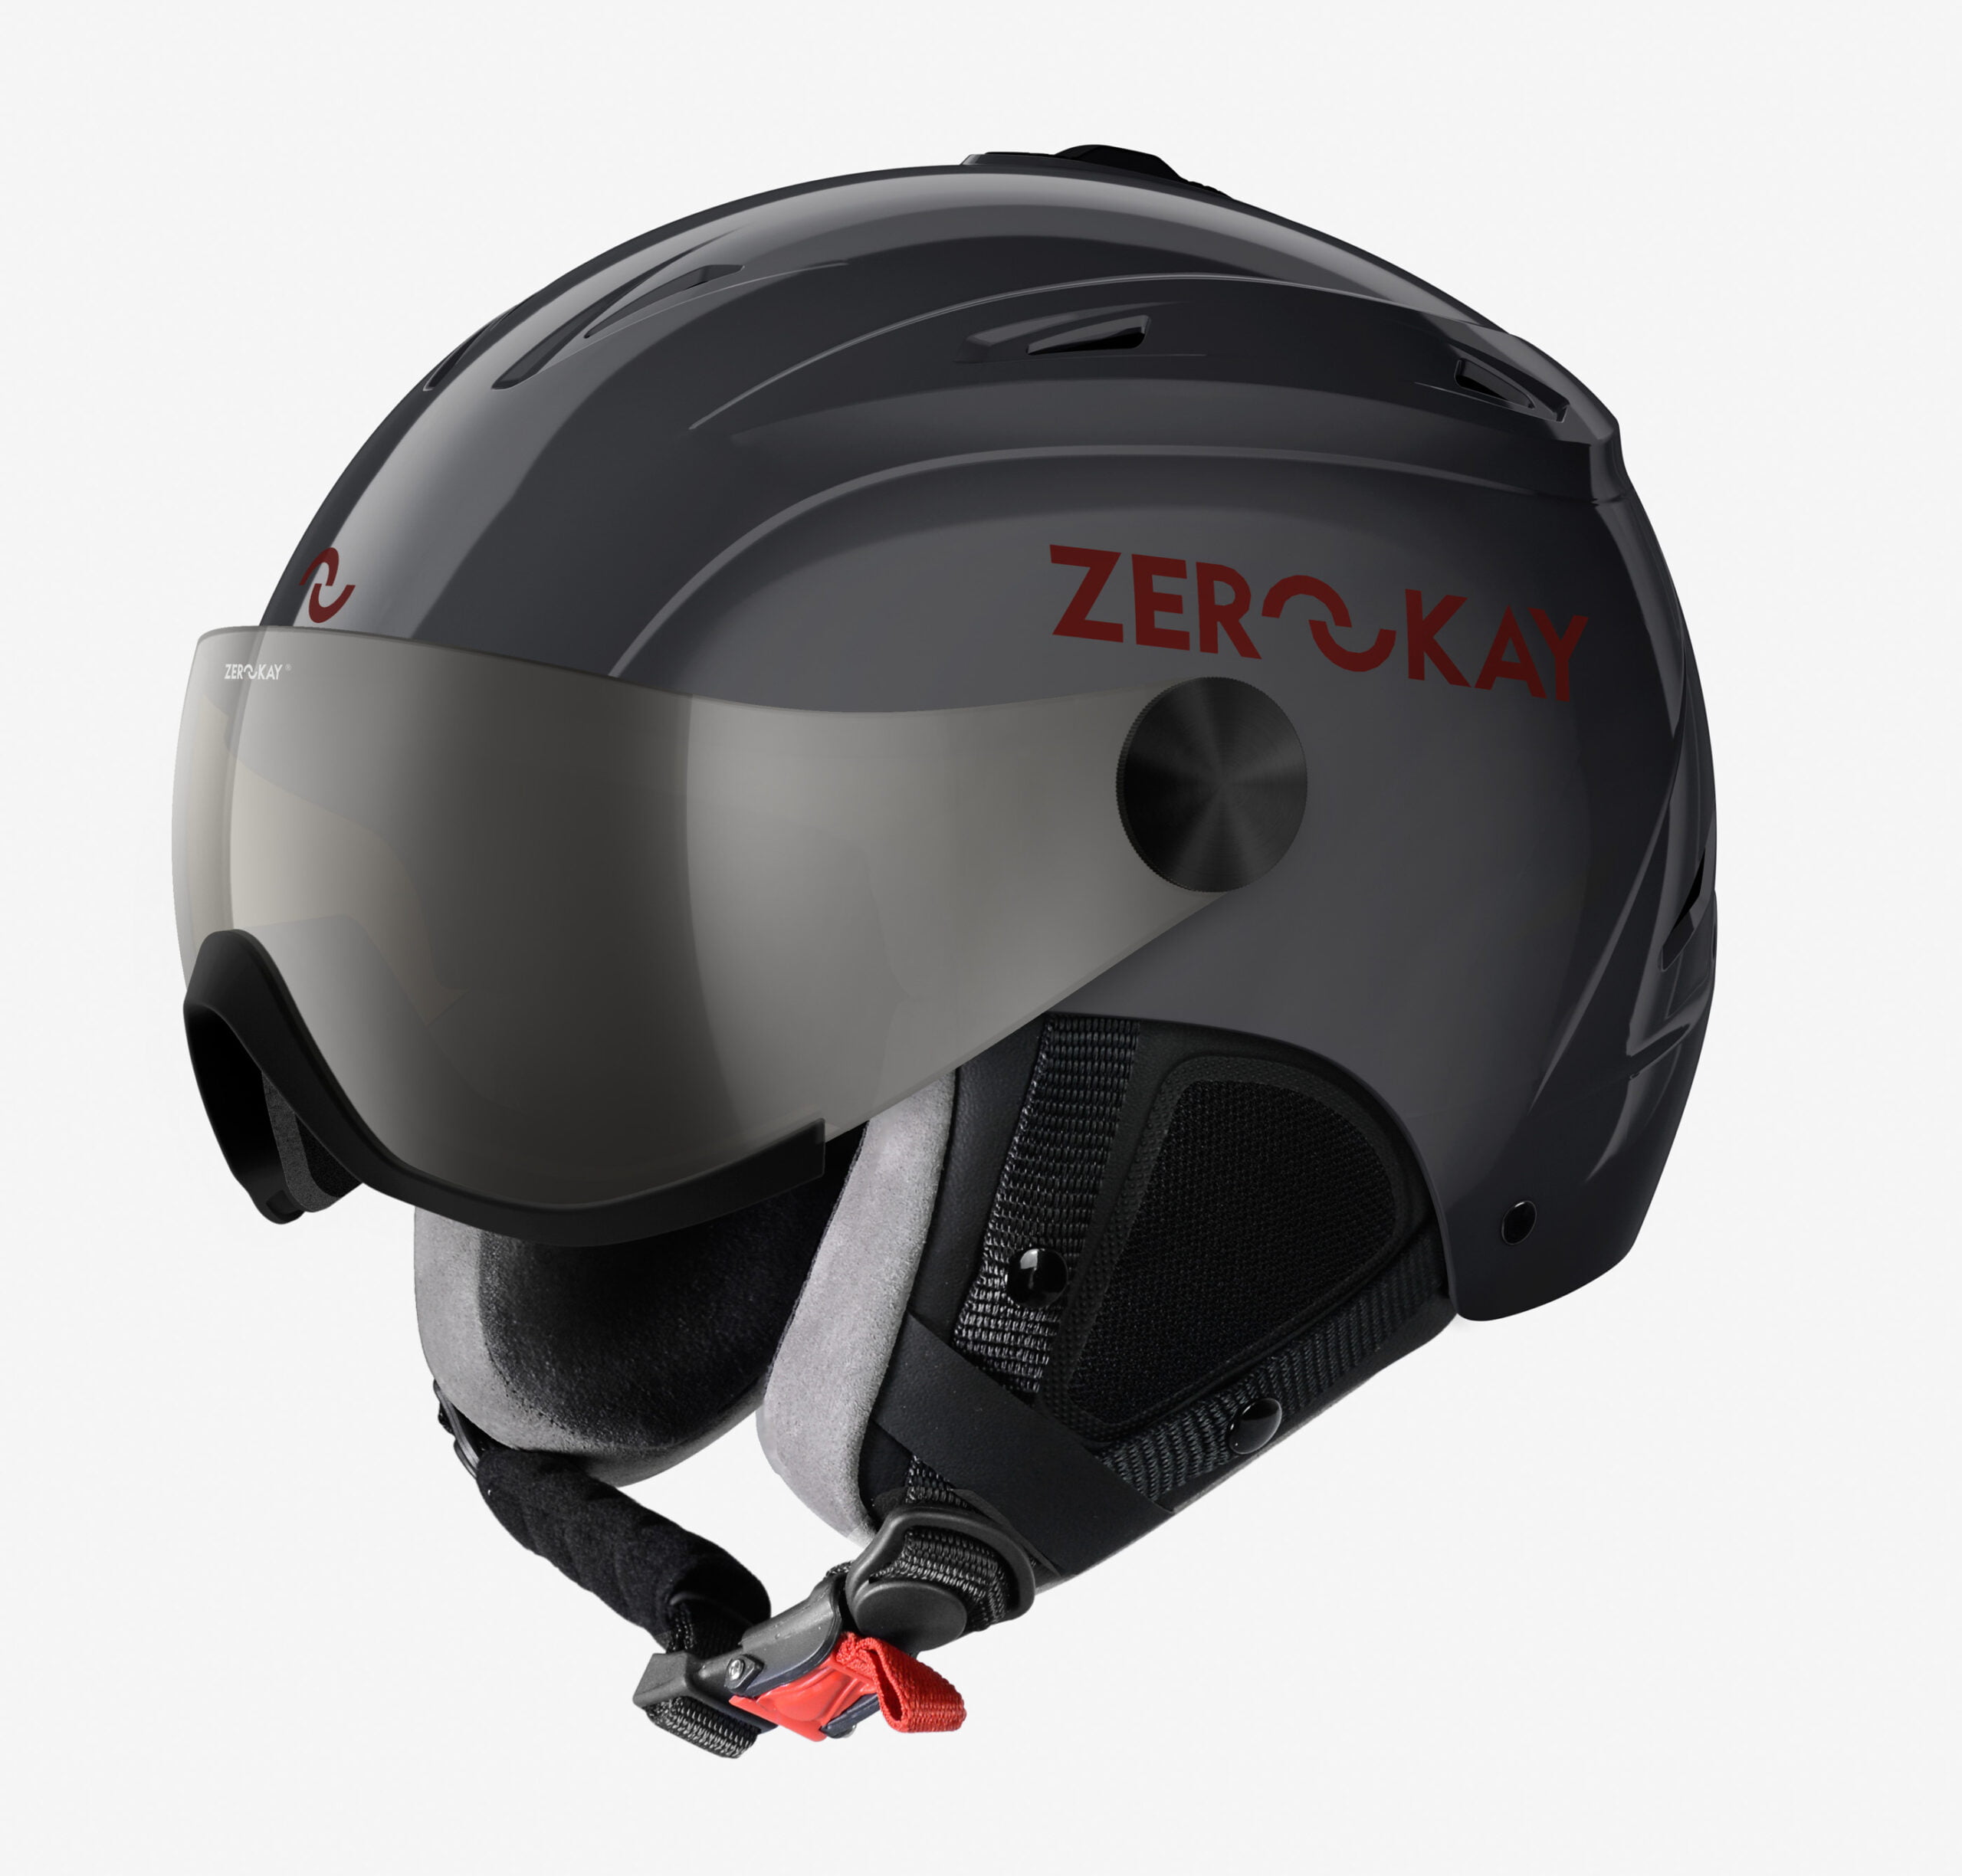 Visor grey ski helmet by zerokay